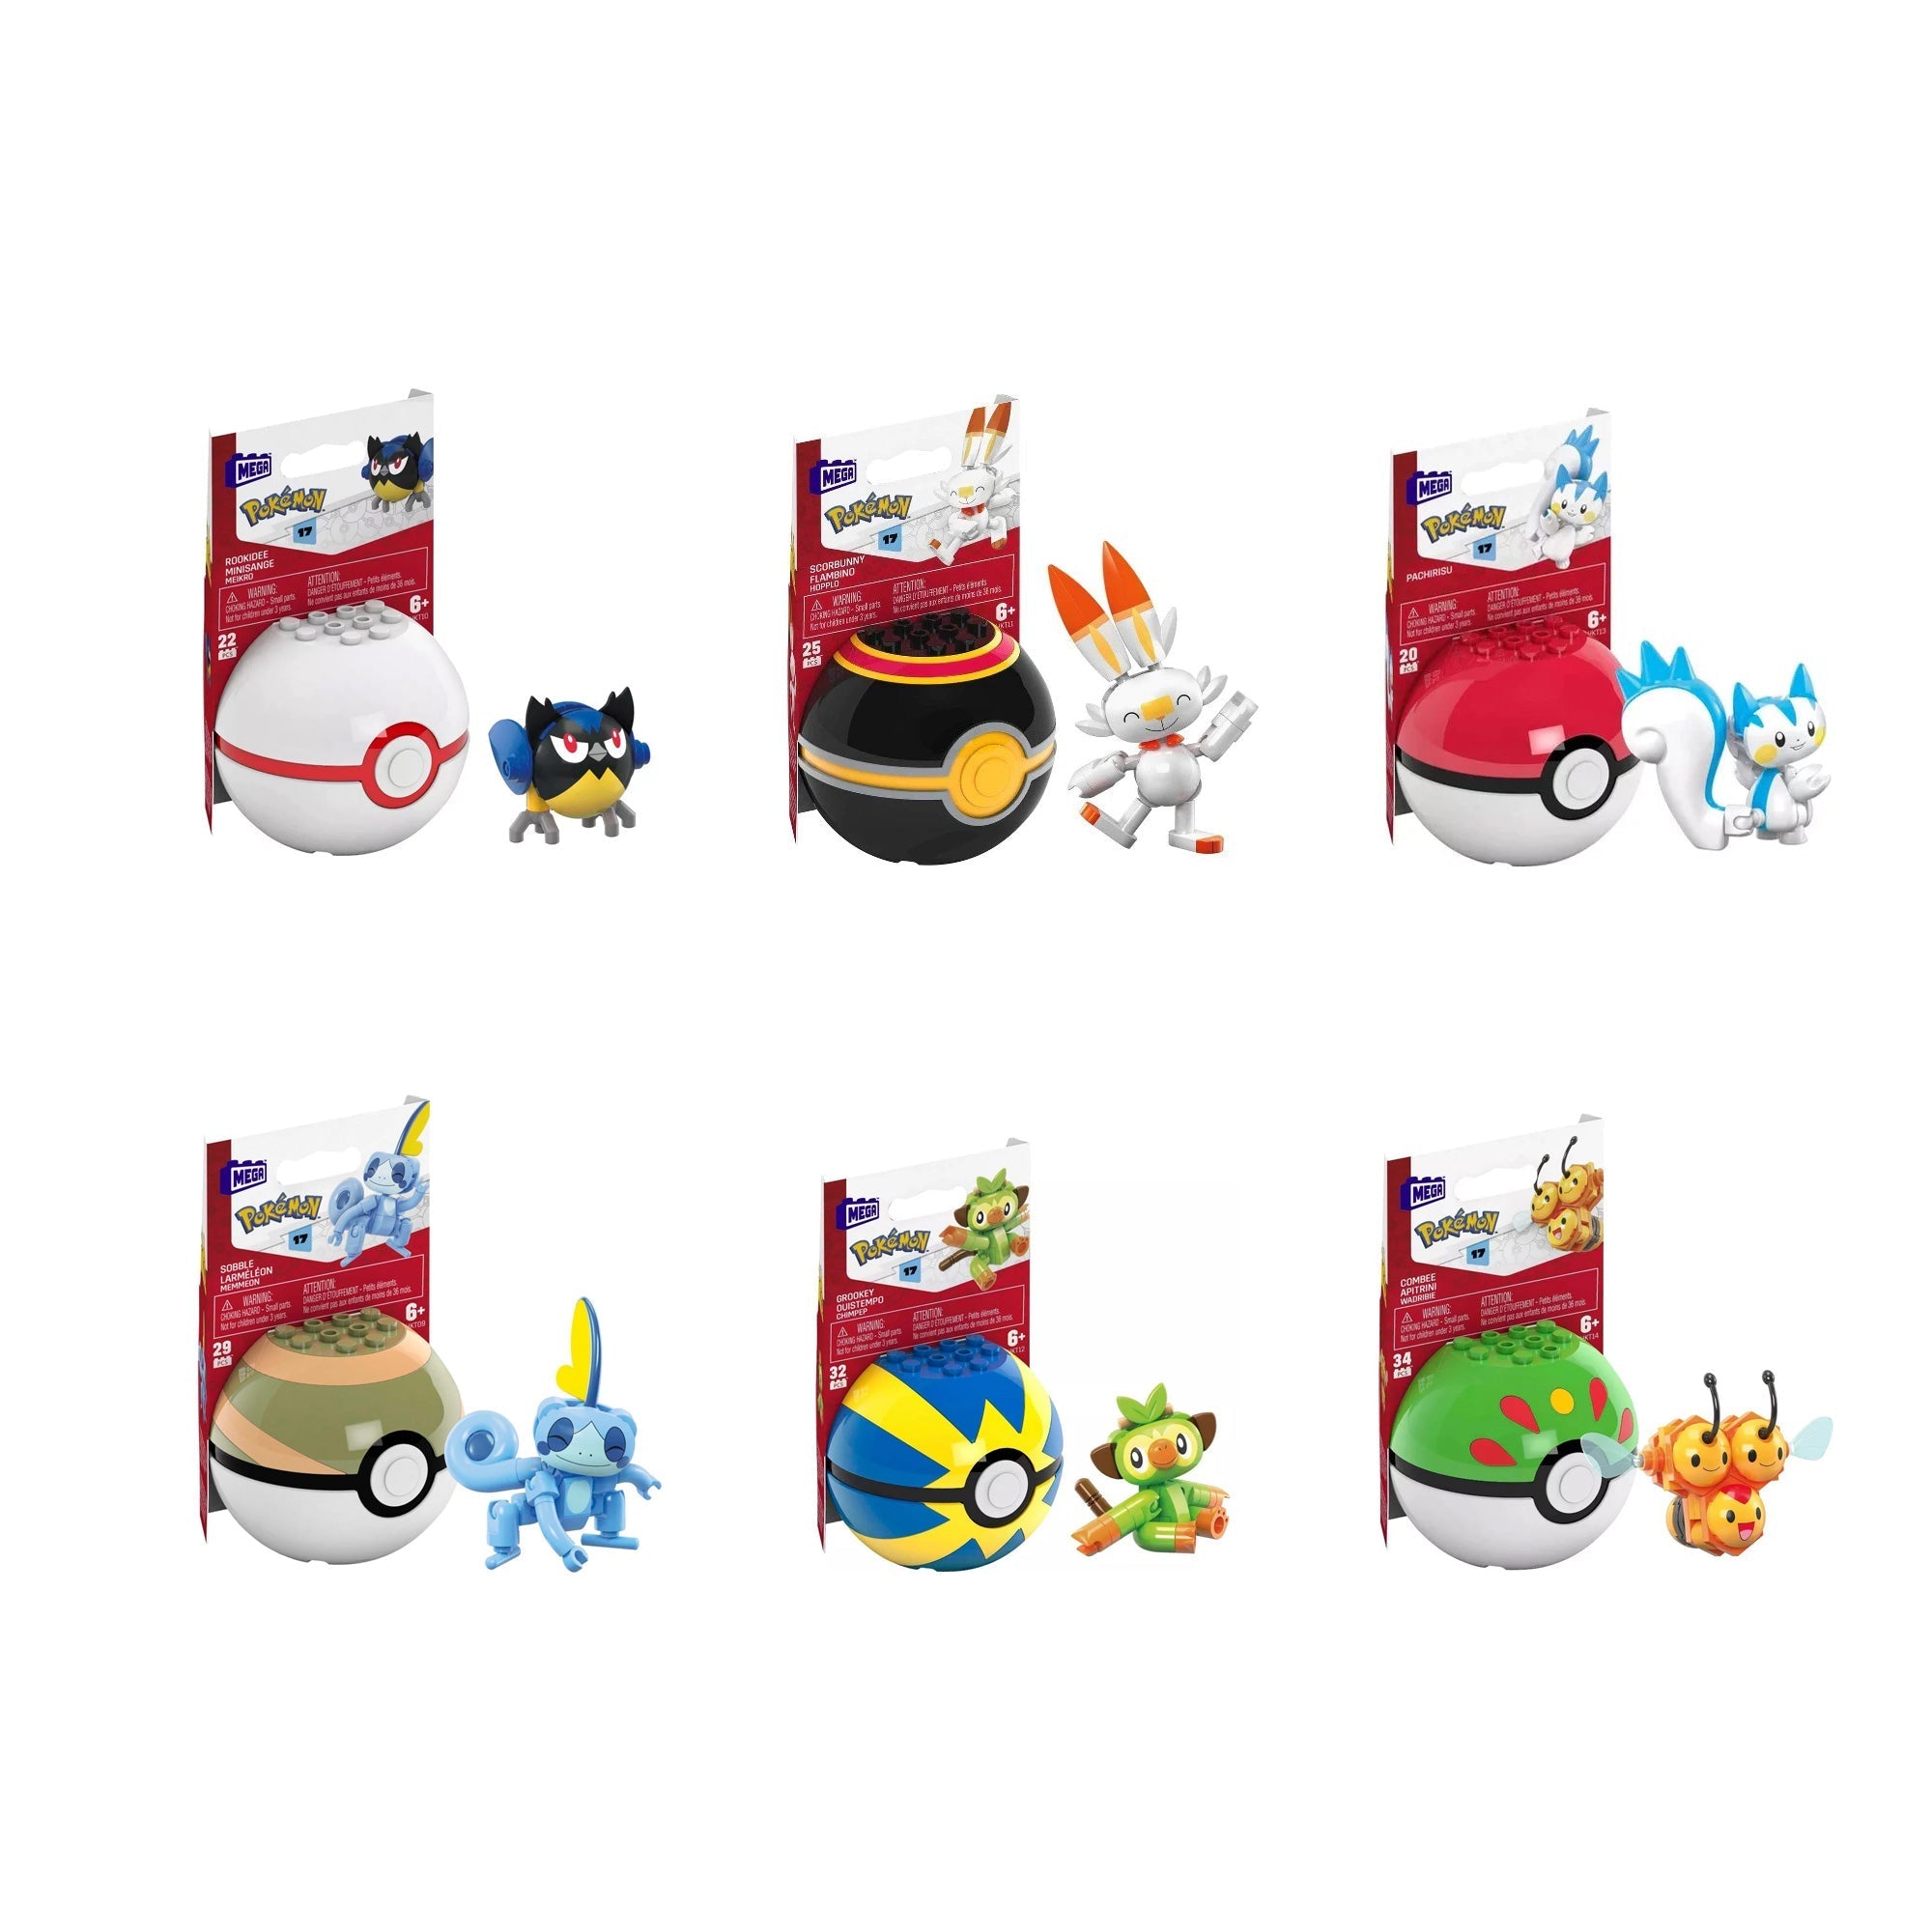 MEGA Pokémon Generations Poké Ball: Series 17 Assorted - Ages 6+